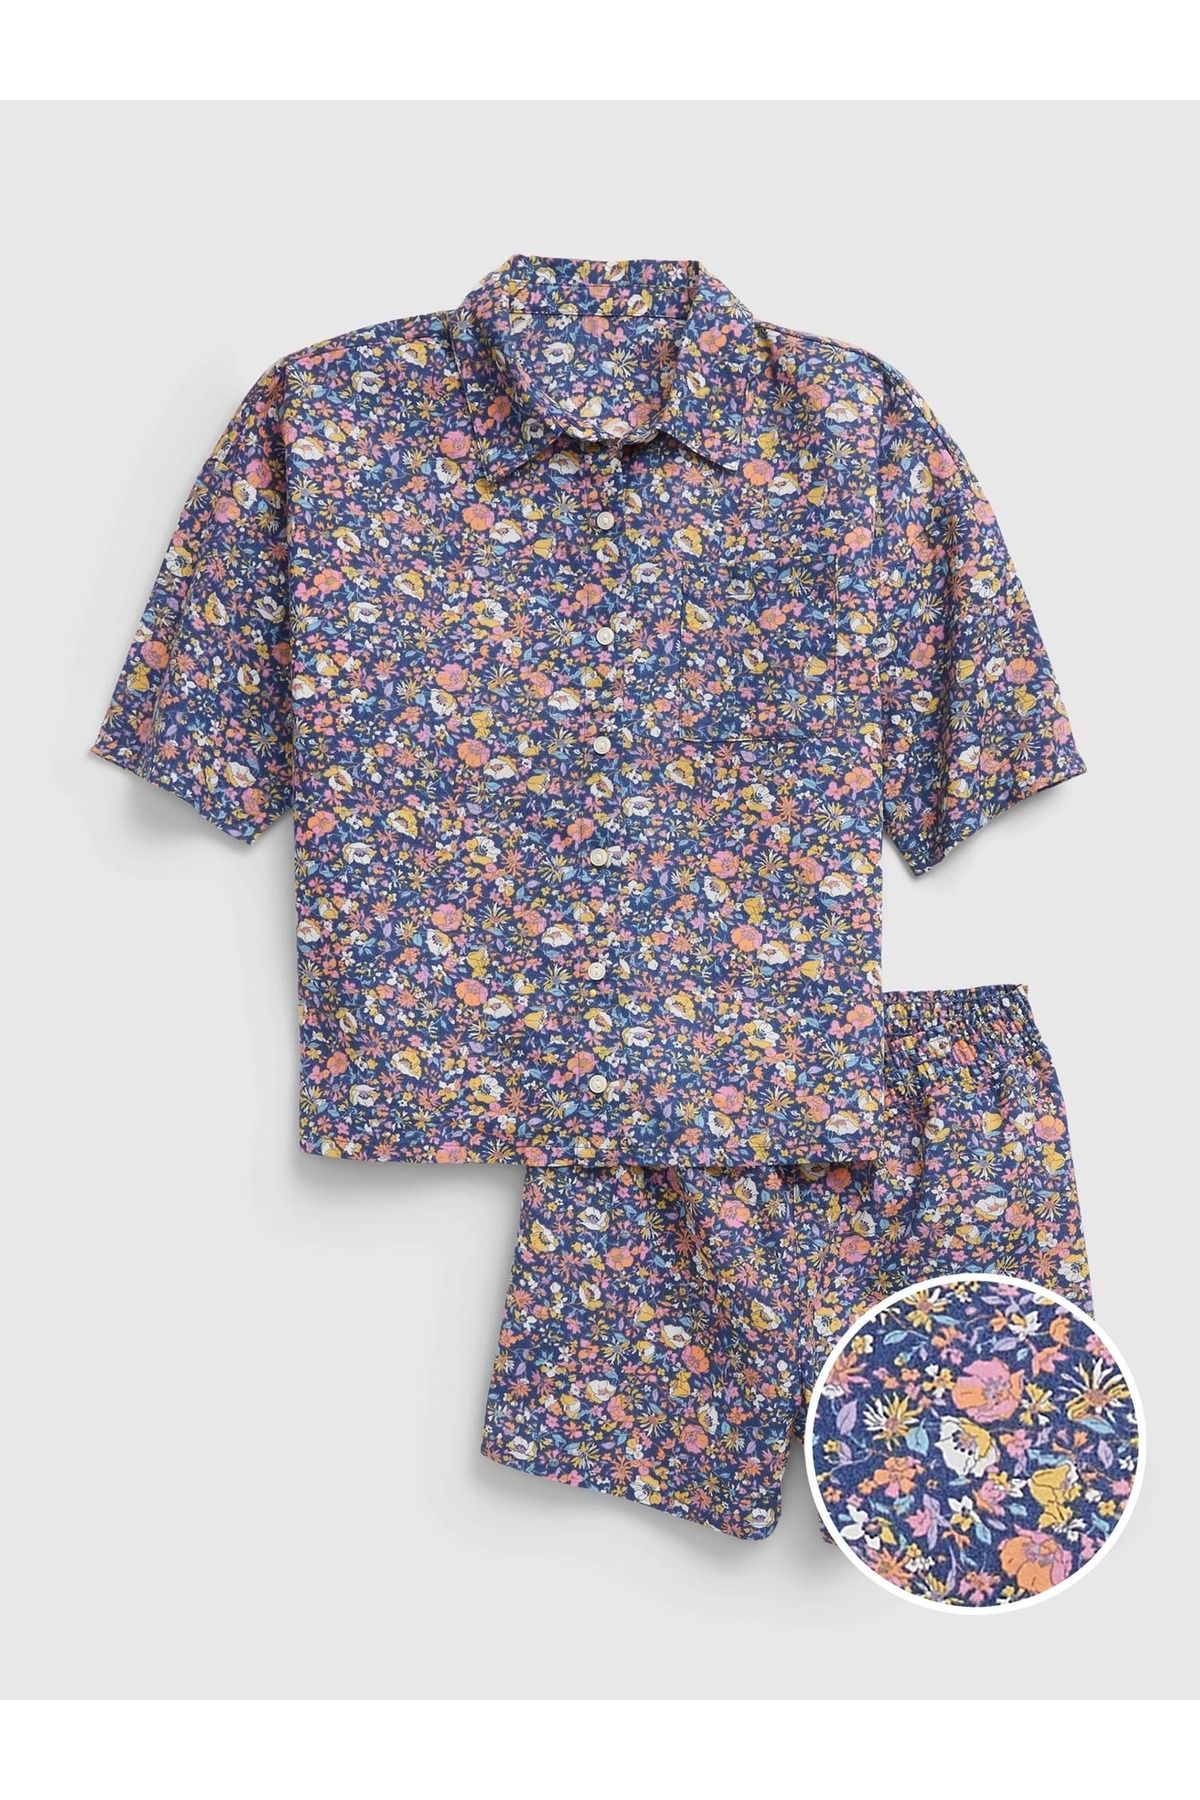 GAP Kız Çocuk Çok Renkli %100 Geri Dönüştürülmüş Çiçek Desenli Pijama Takımı